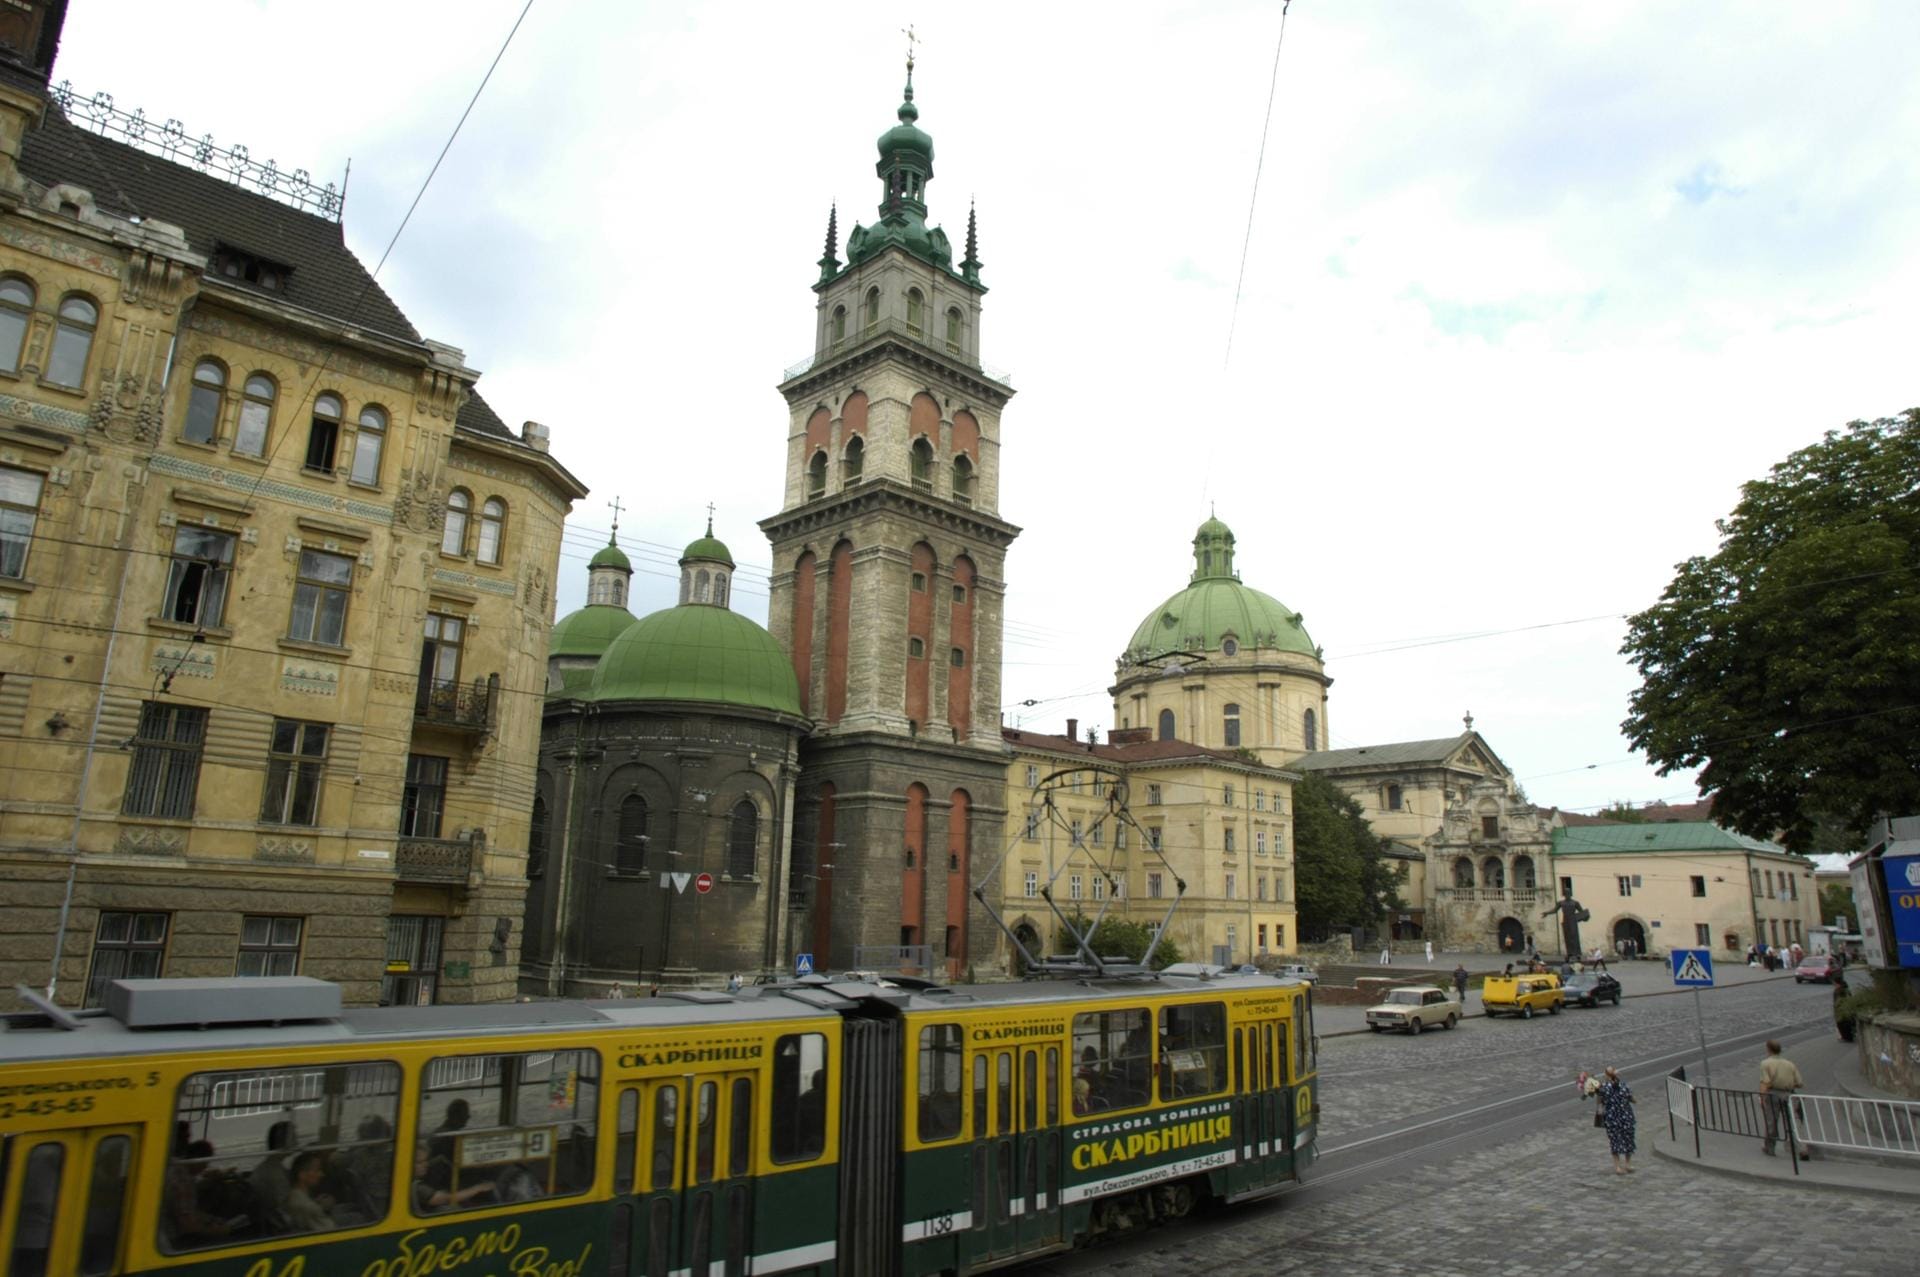 Die alten Straßenbahnen gehören in das Lemberger Stadtbild ebenso wie die vielen Sakralbauten.